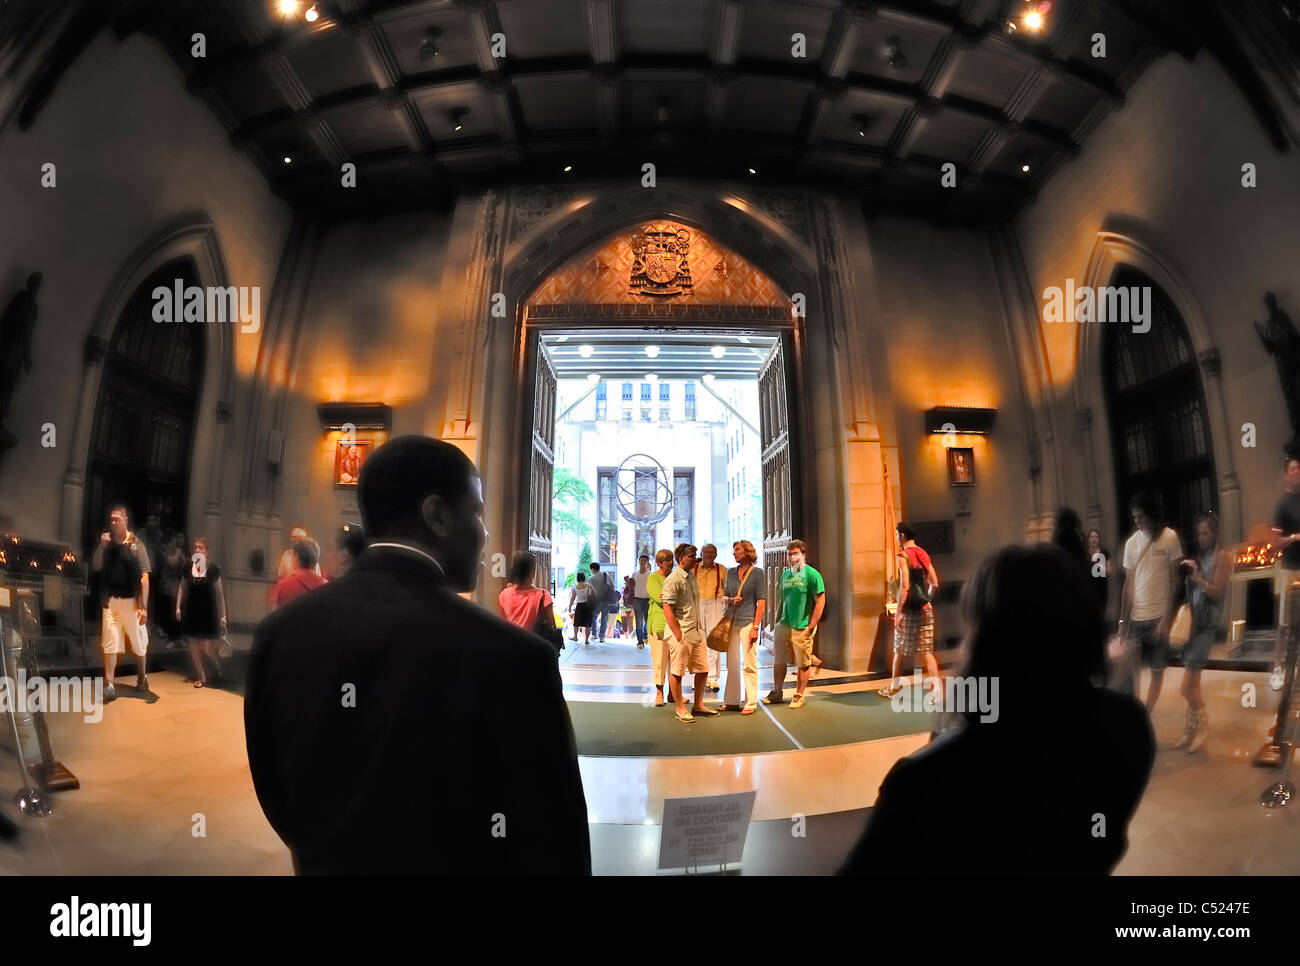 Dentro de la Catedral de San Patricio, vestíbulo mirando hacia la estatua de Atlas, 5th Avenue, Nueva York, Nueva York, Estados Unidos, 2011 (lente de ojo de pez) Foto de stock